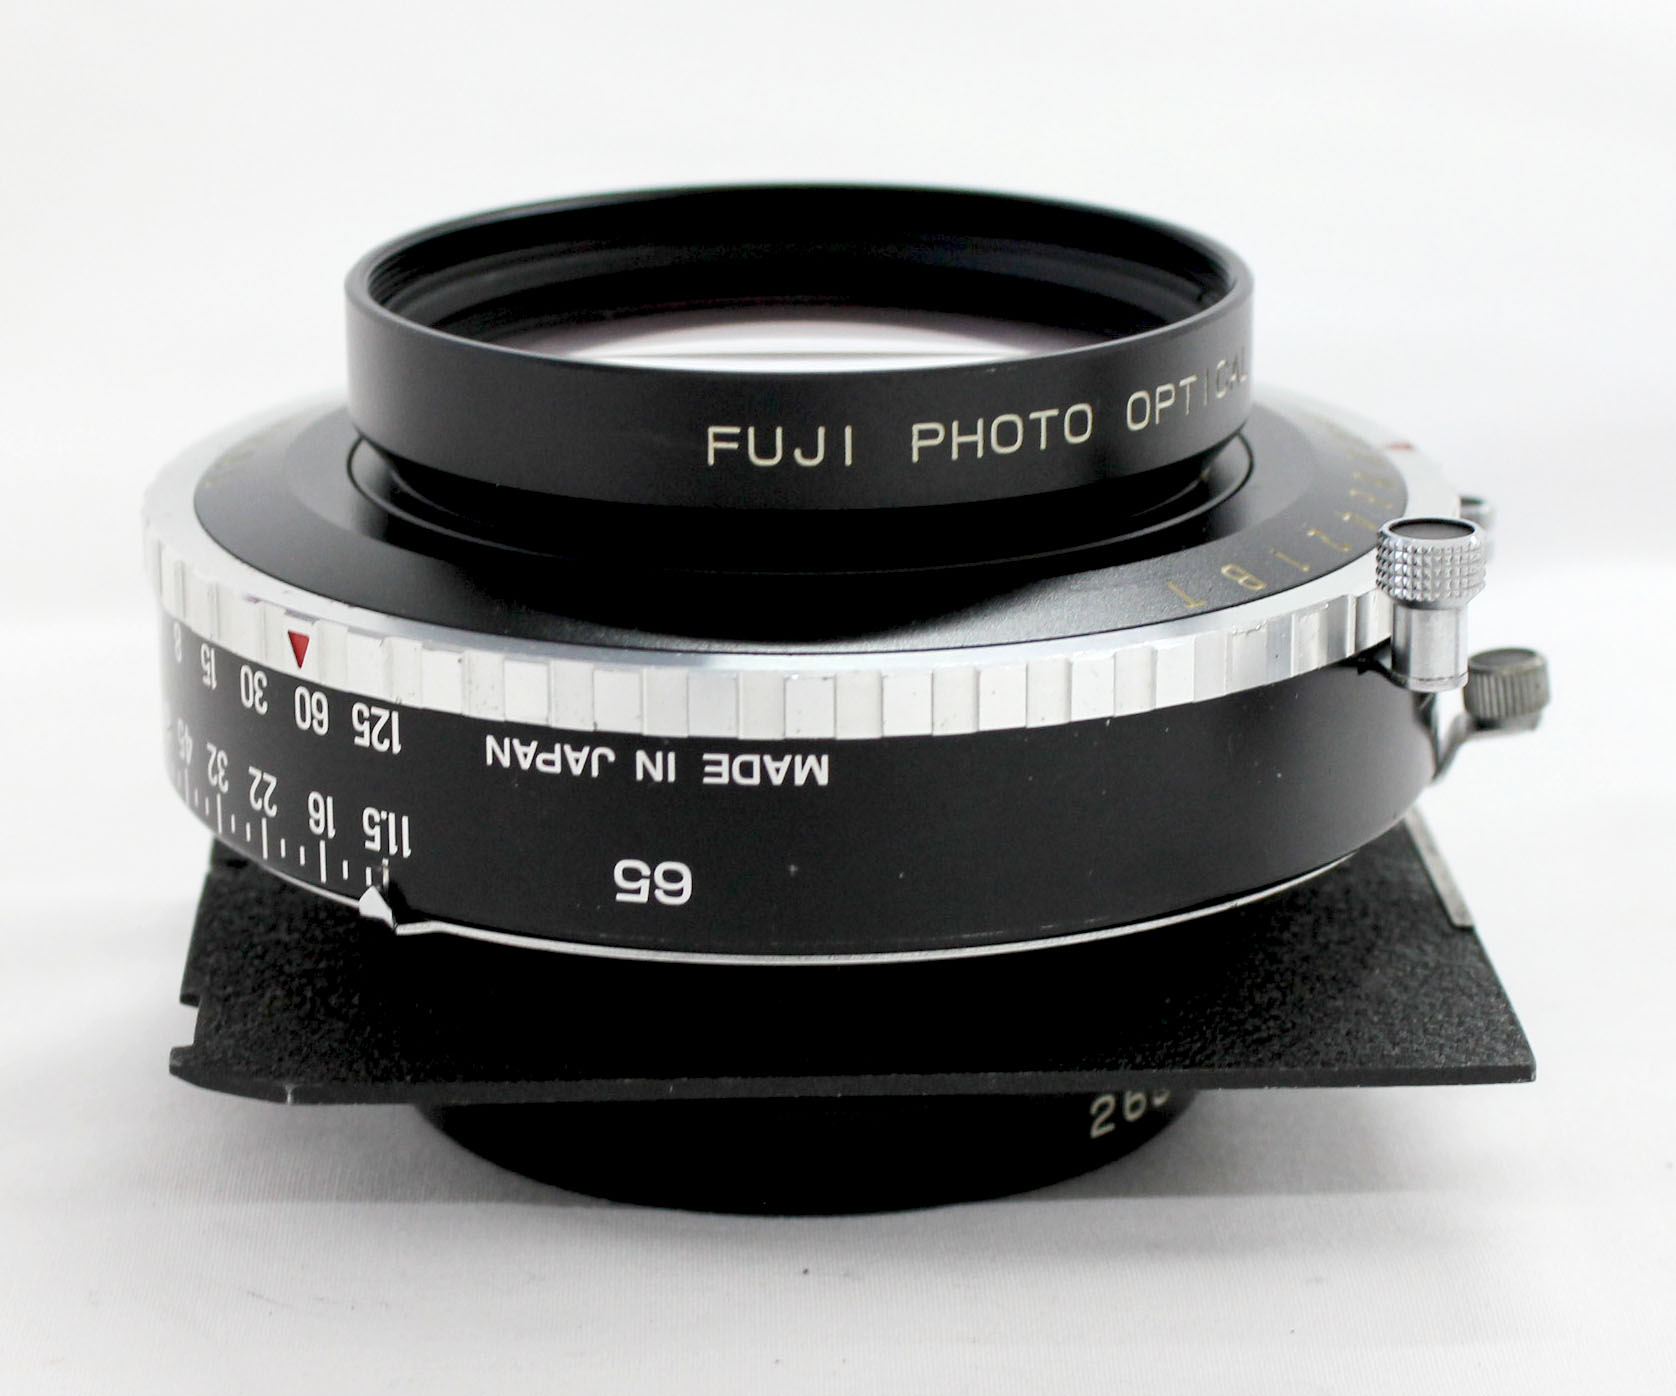  Fuji Fujinon C 600mm F/11.5 4x5 8x10 Large Format Lens Copal No.3 Shutter from Japan Photo 7